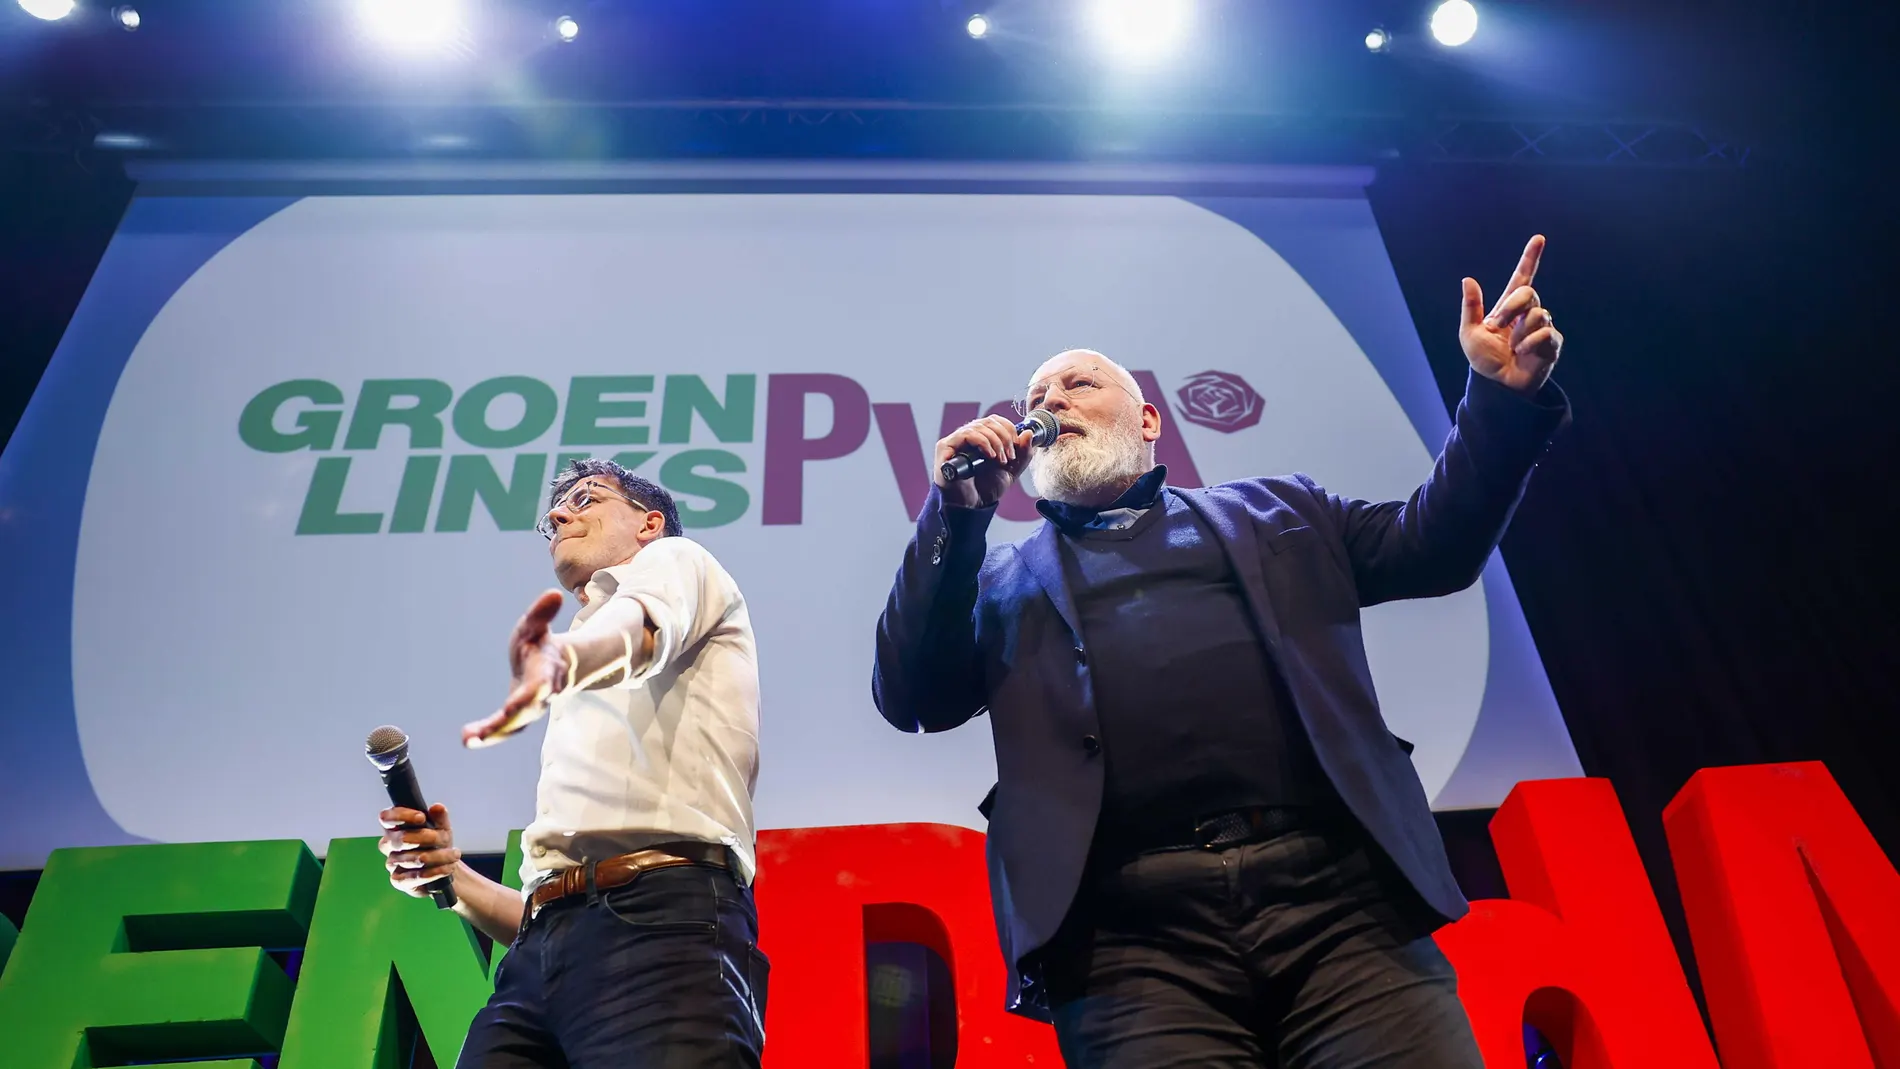 Bas Eickhout y Frans Timmermans, líderes del GroenLinks PvdA (coalición laborista-verde) de Países Bajos